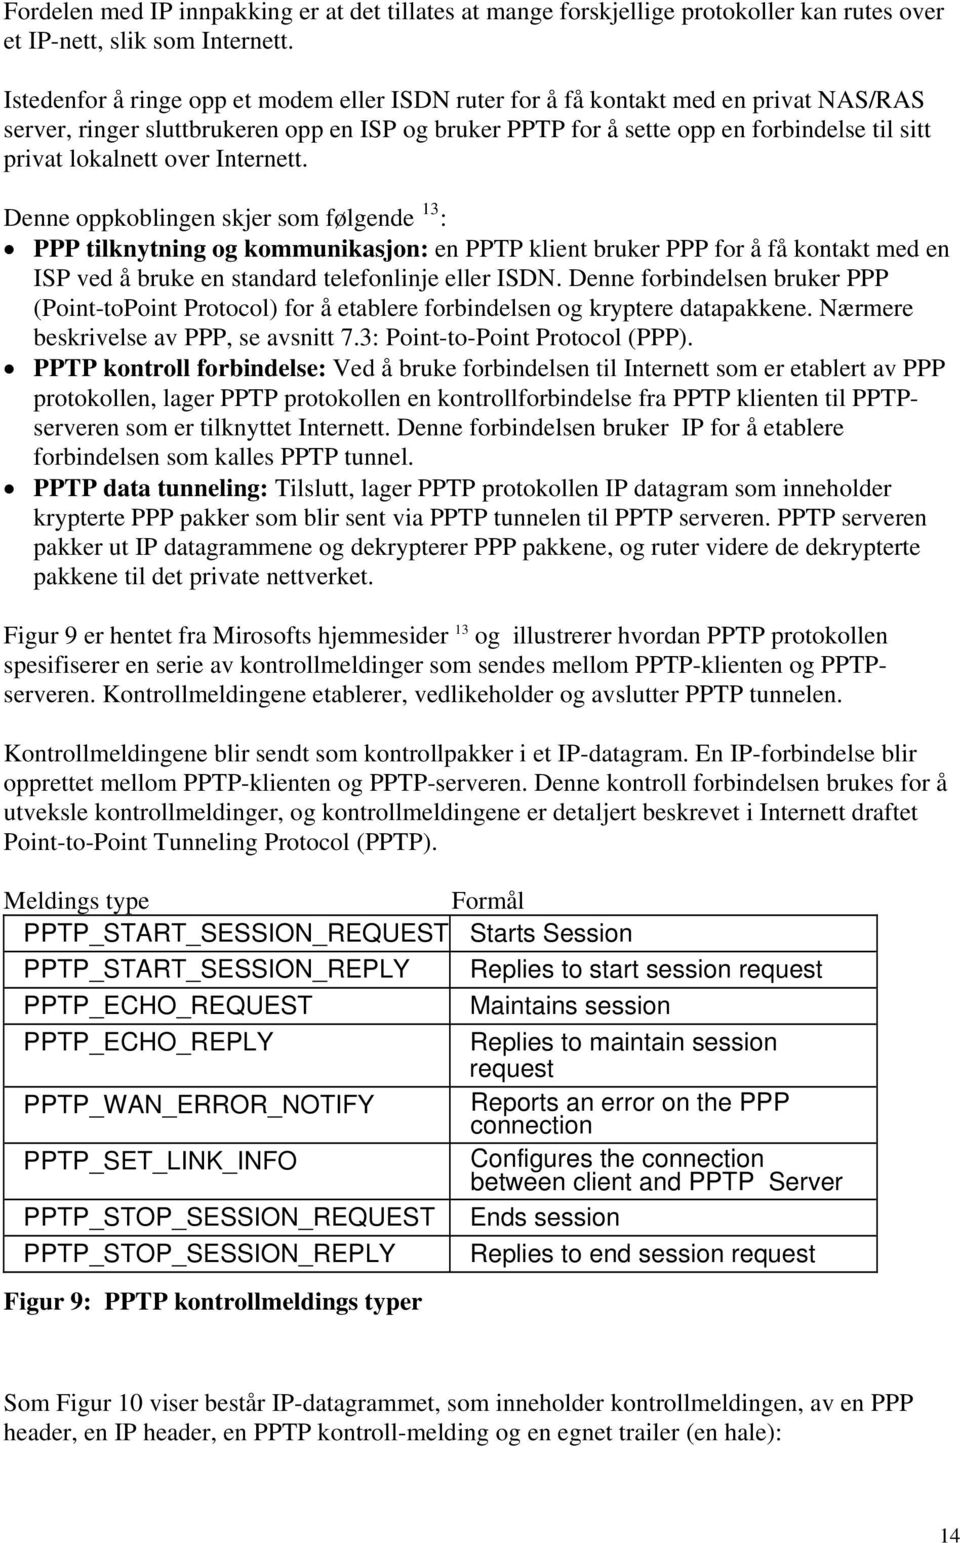 over Internett. Denne oppkoblingen skjer som følgende 13 : PPP tilknytning og kommunikasjon: en PPTP klient bruker PPP for å få kontakt med en ISP ved å bruke en standard telefonlinje eller ISDN.